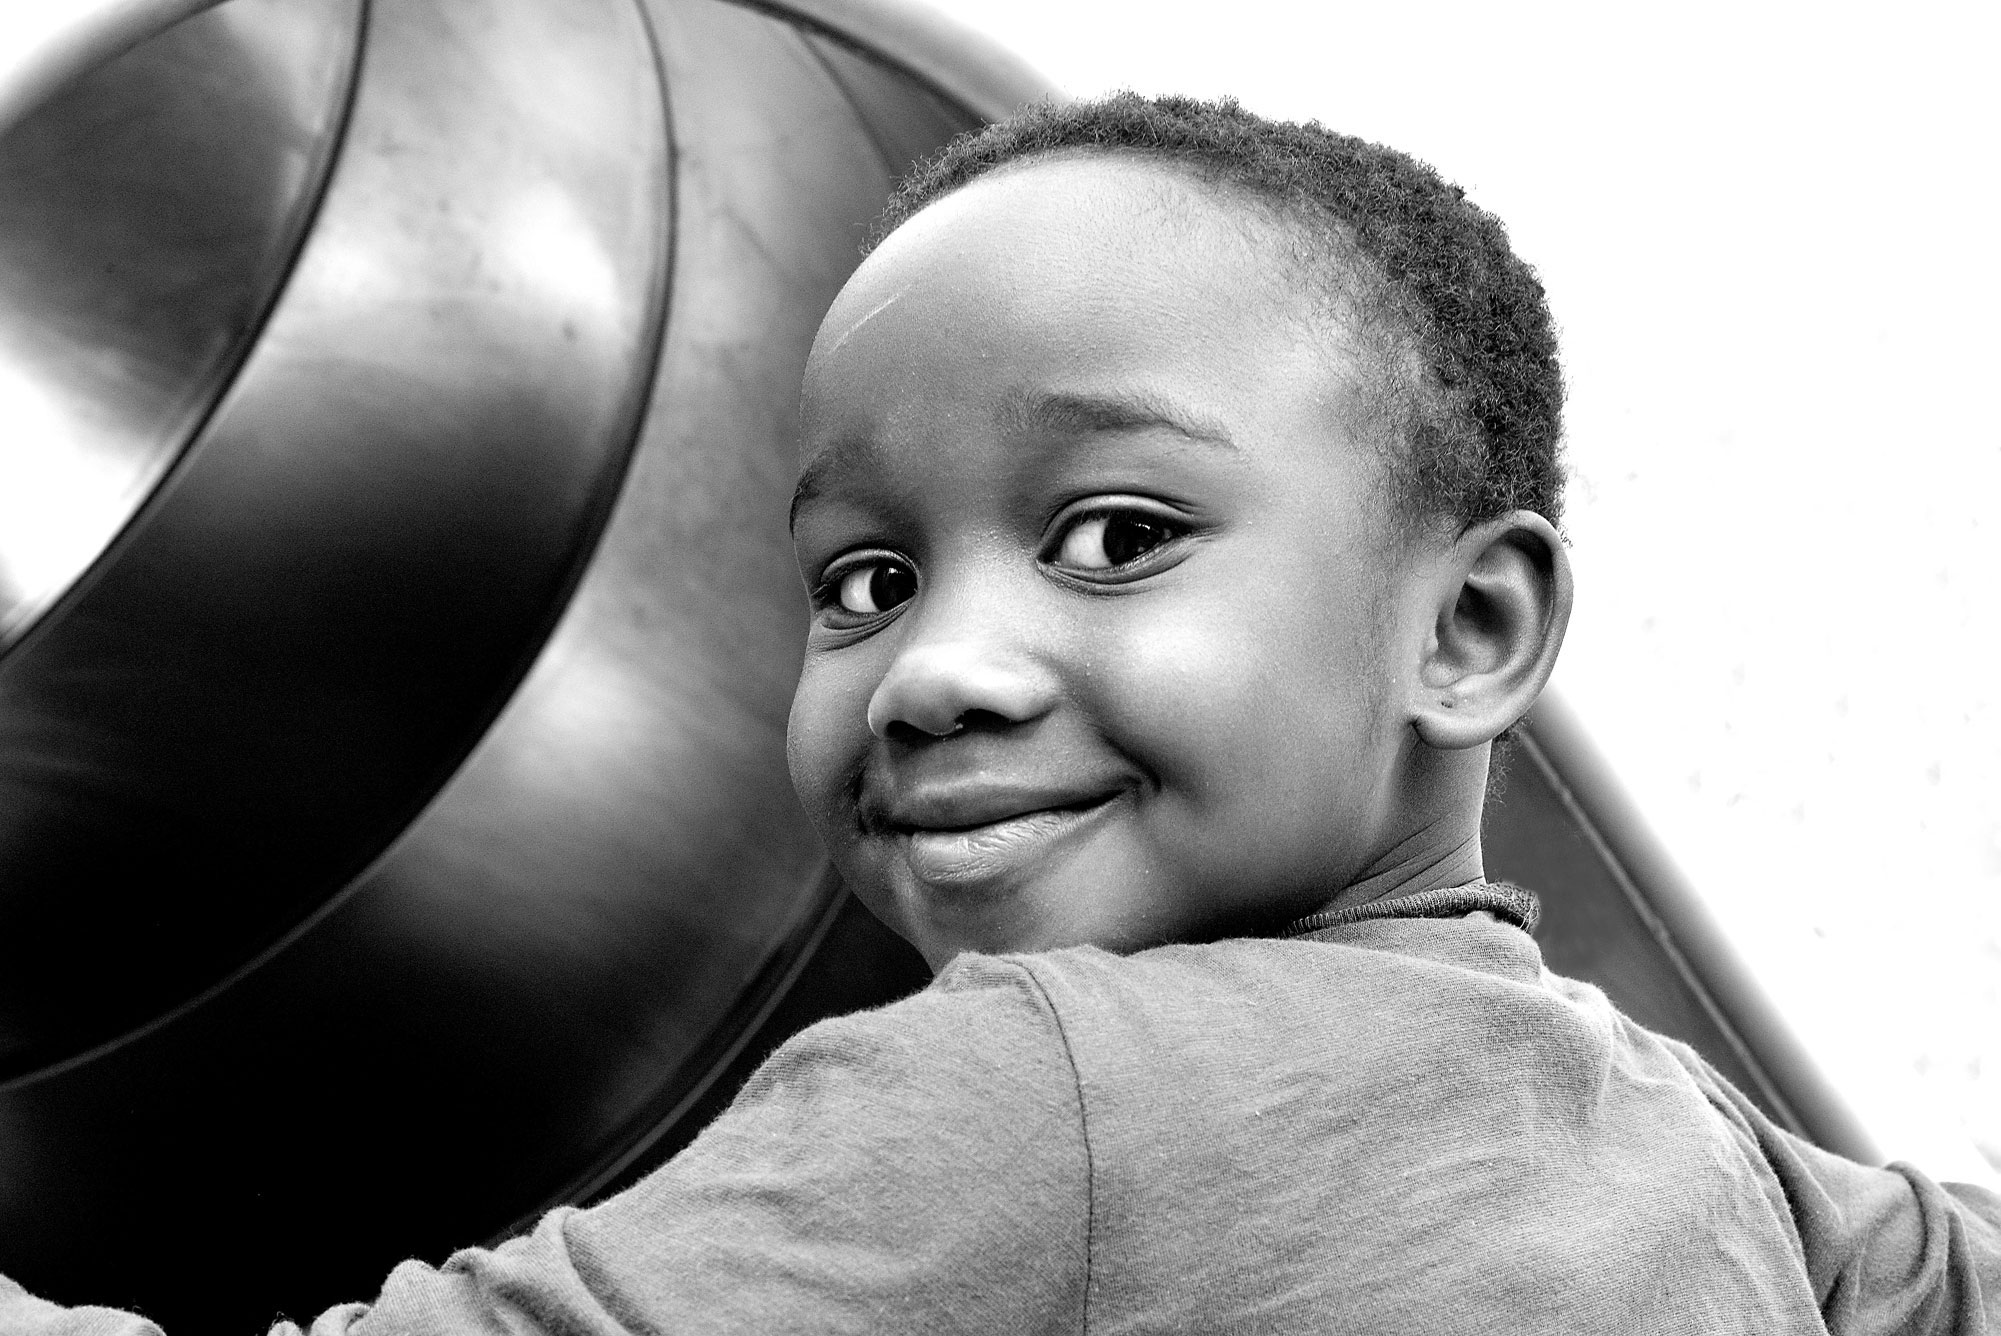 Porträtfotografie eines schwarzen Jungen (S/W-Aufnahme)